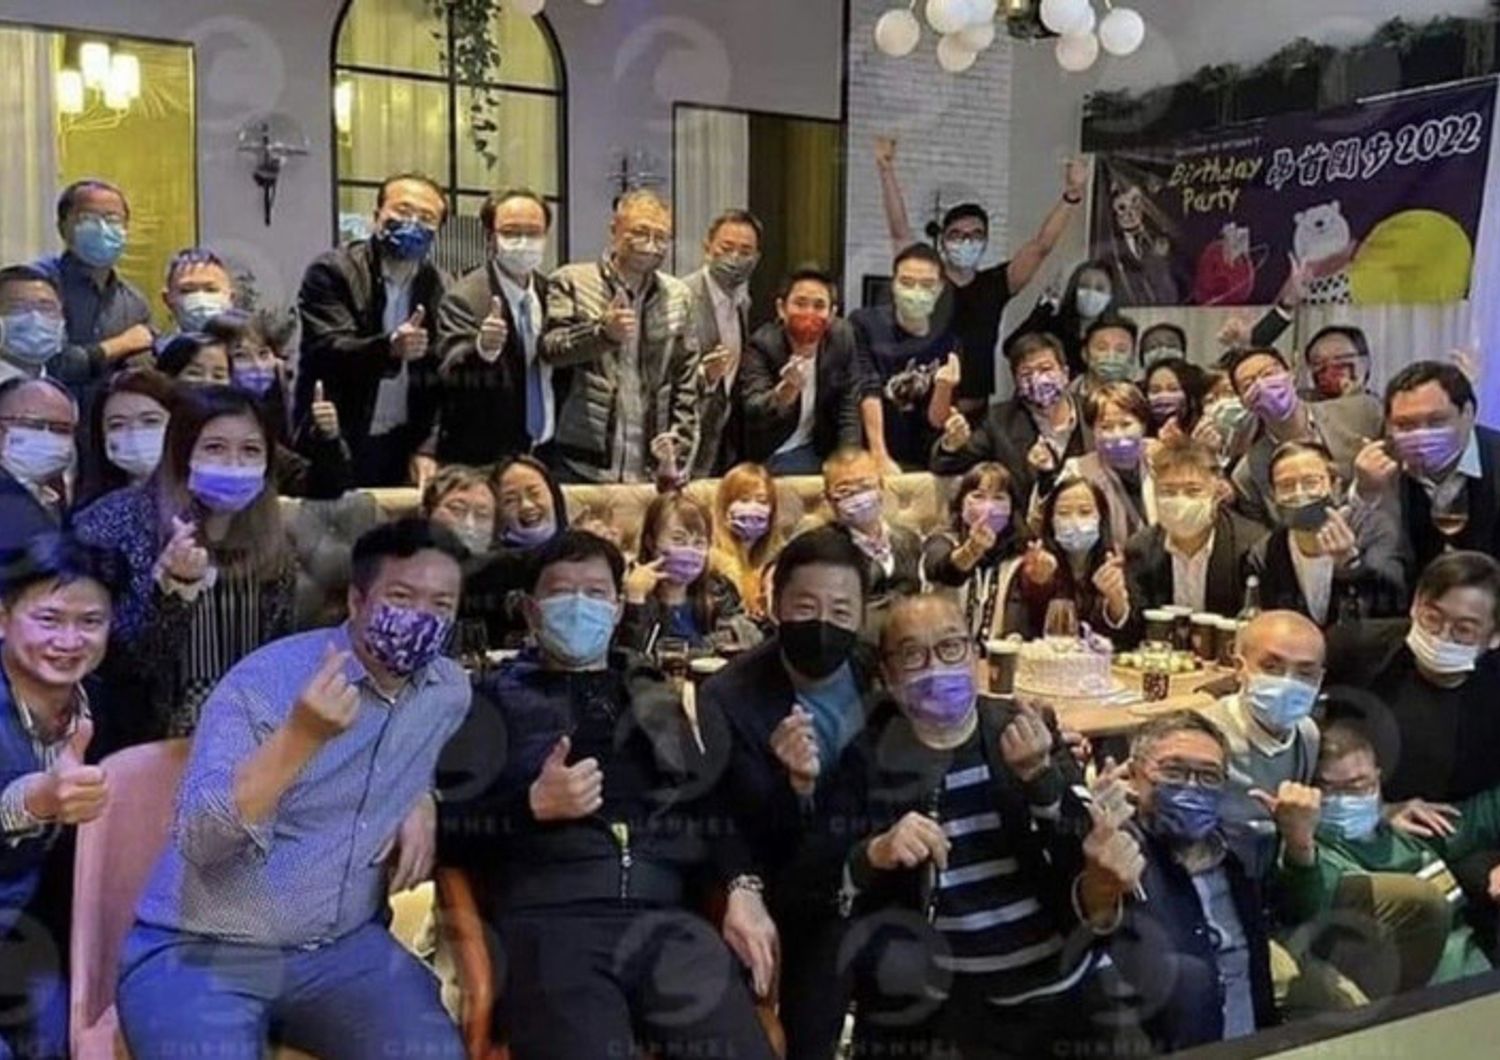 Foto di gruppo alla festa di compleanno 'incriminata'